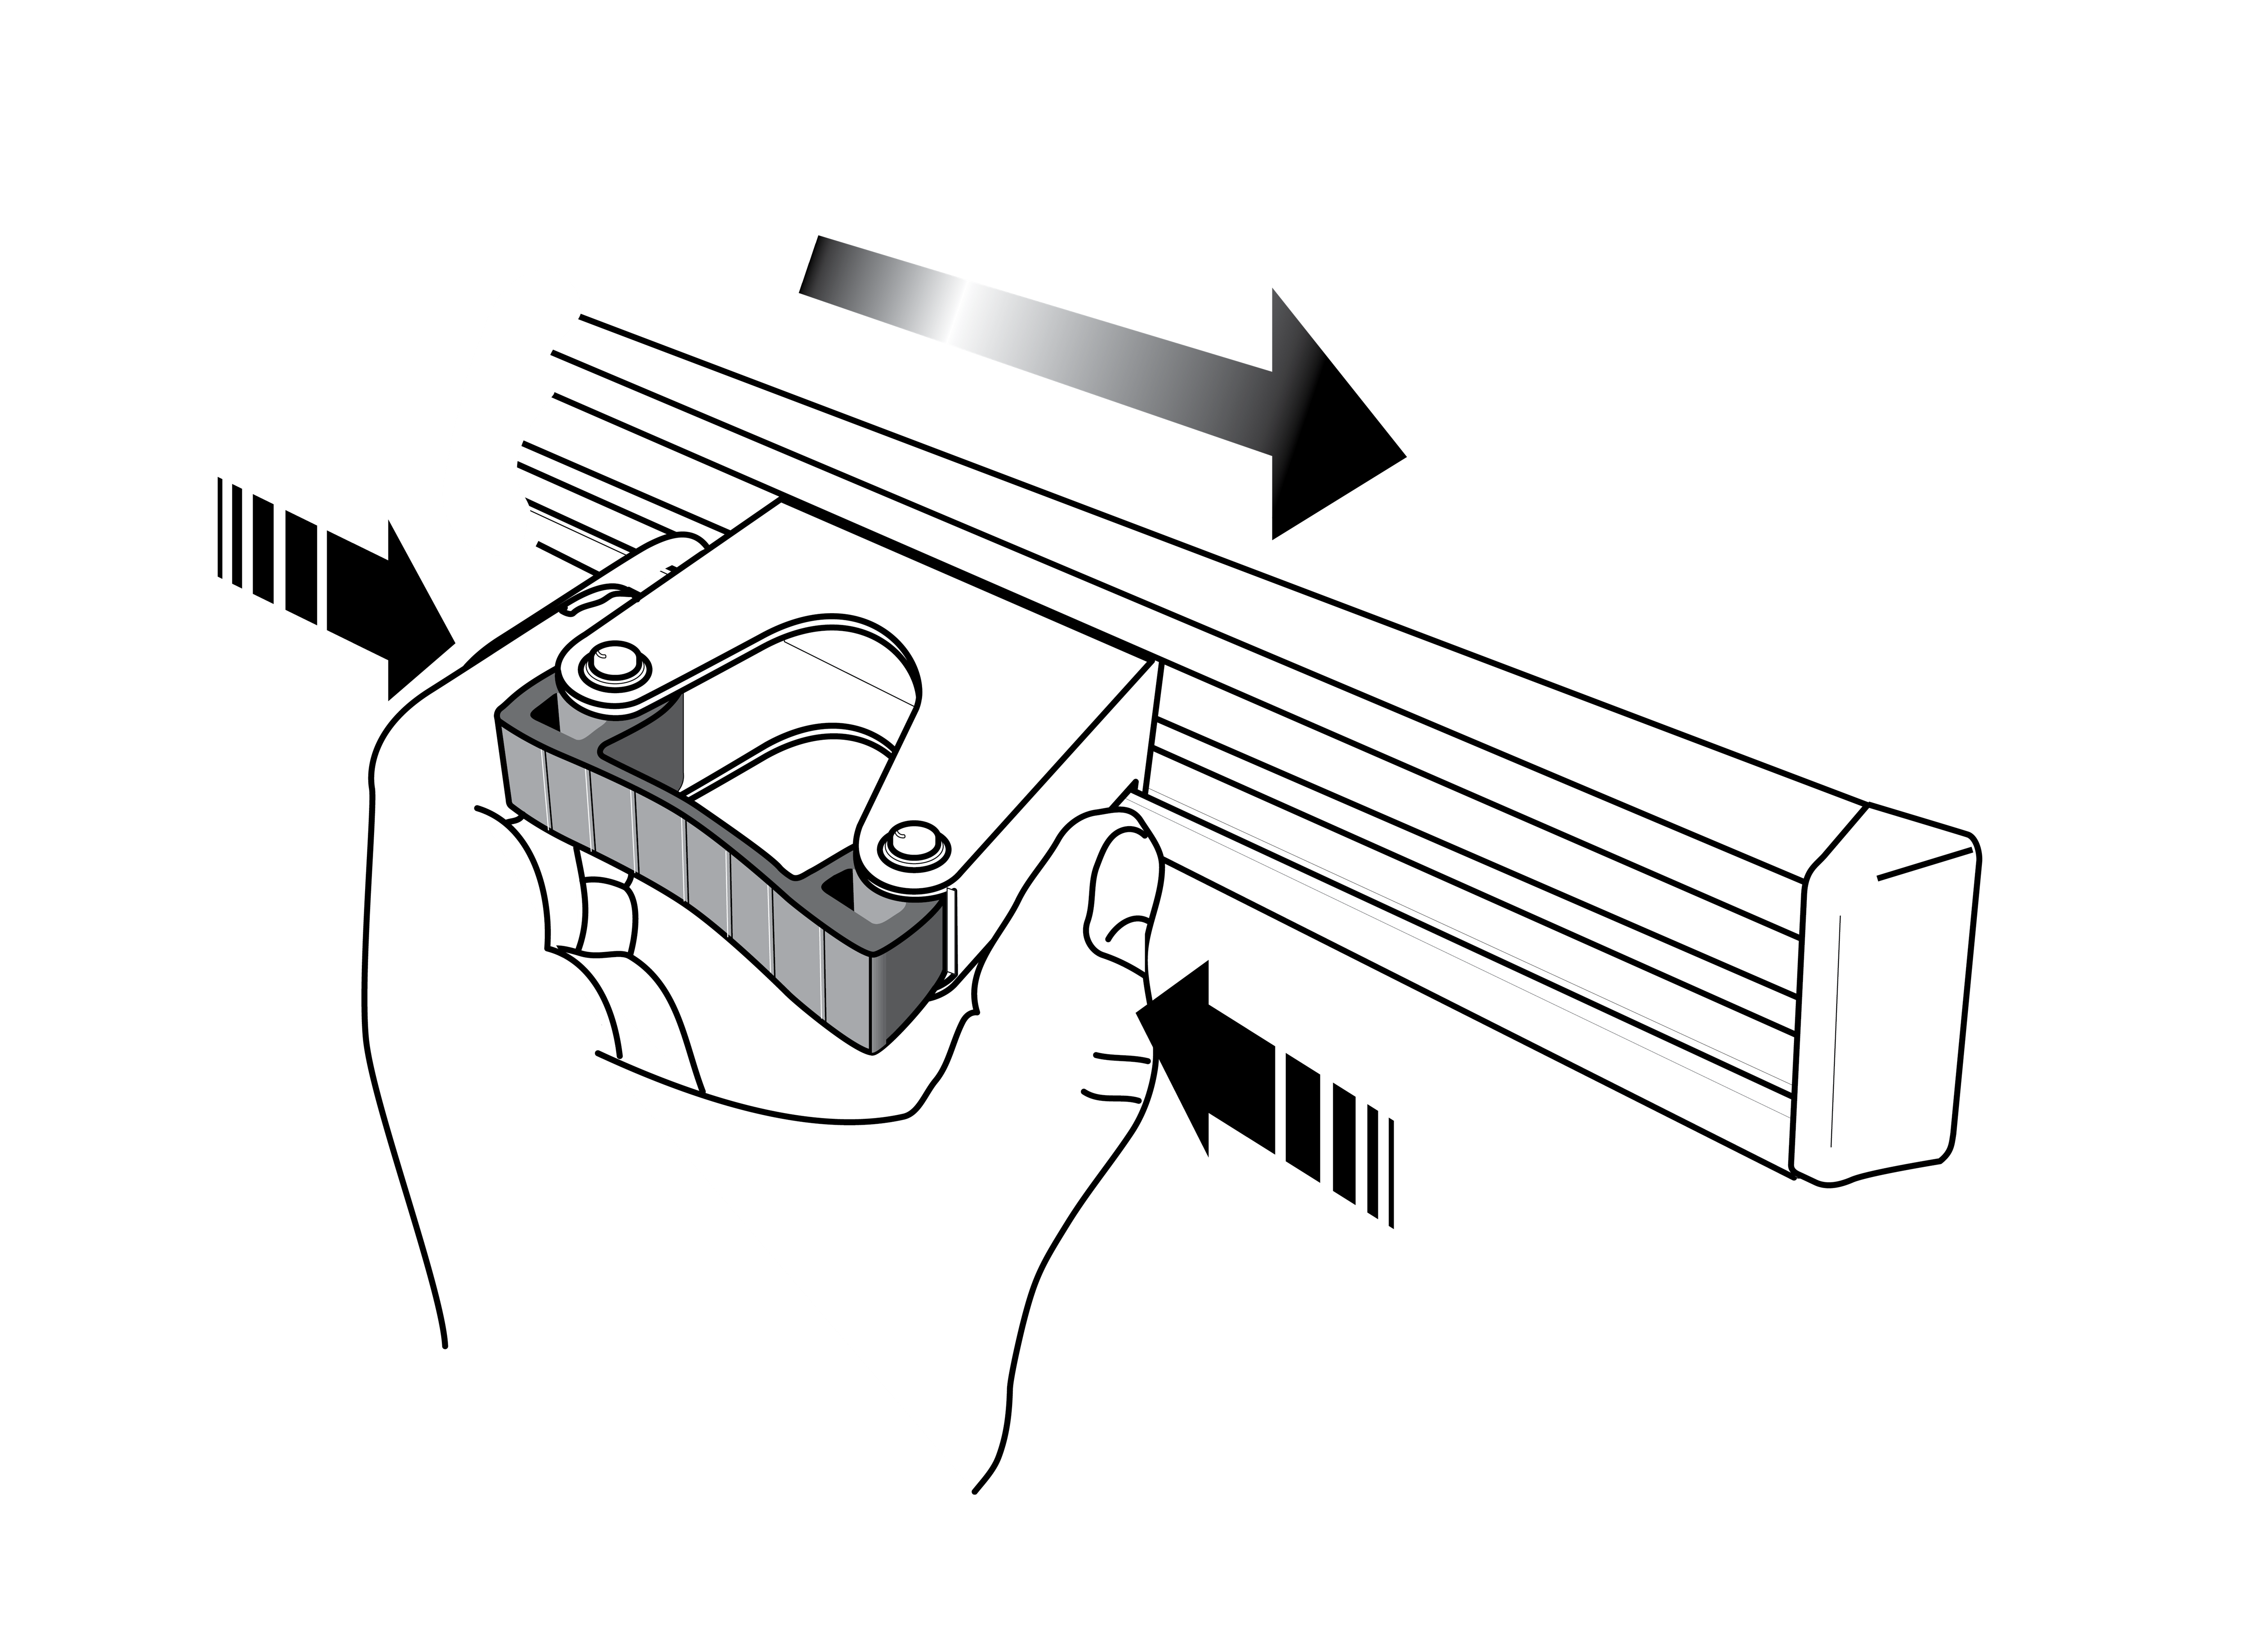 Toolflex Alu-Schiene 90 cm mit schwarzen Endstücken, bestückt mit 3 Halter 20-30mm und 2 Haltern 30-40 mm in schwarz